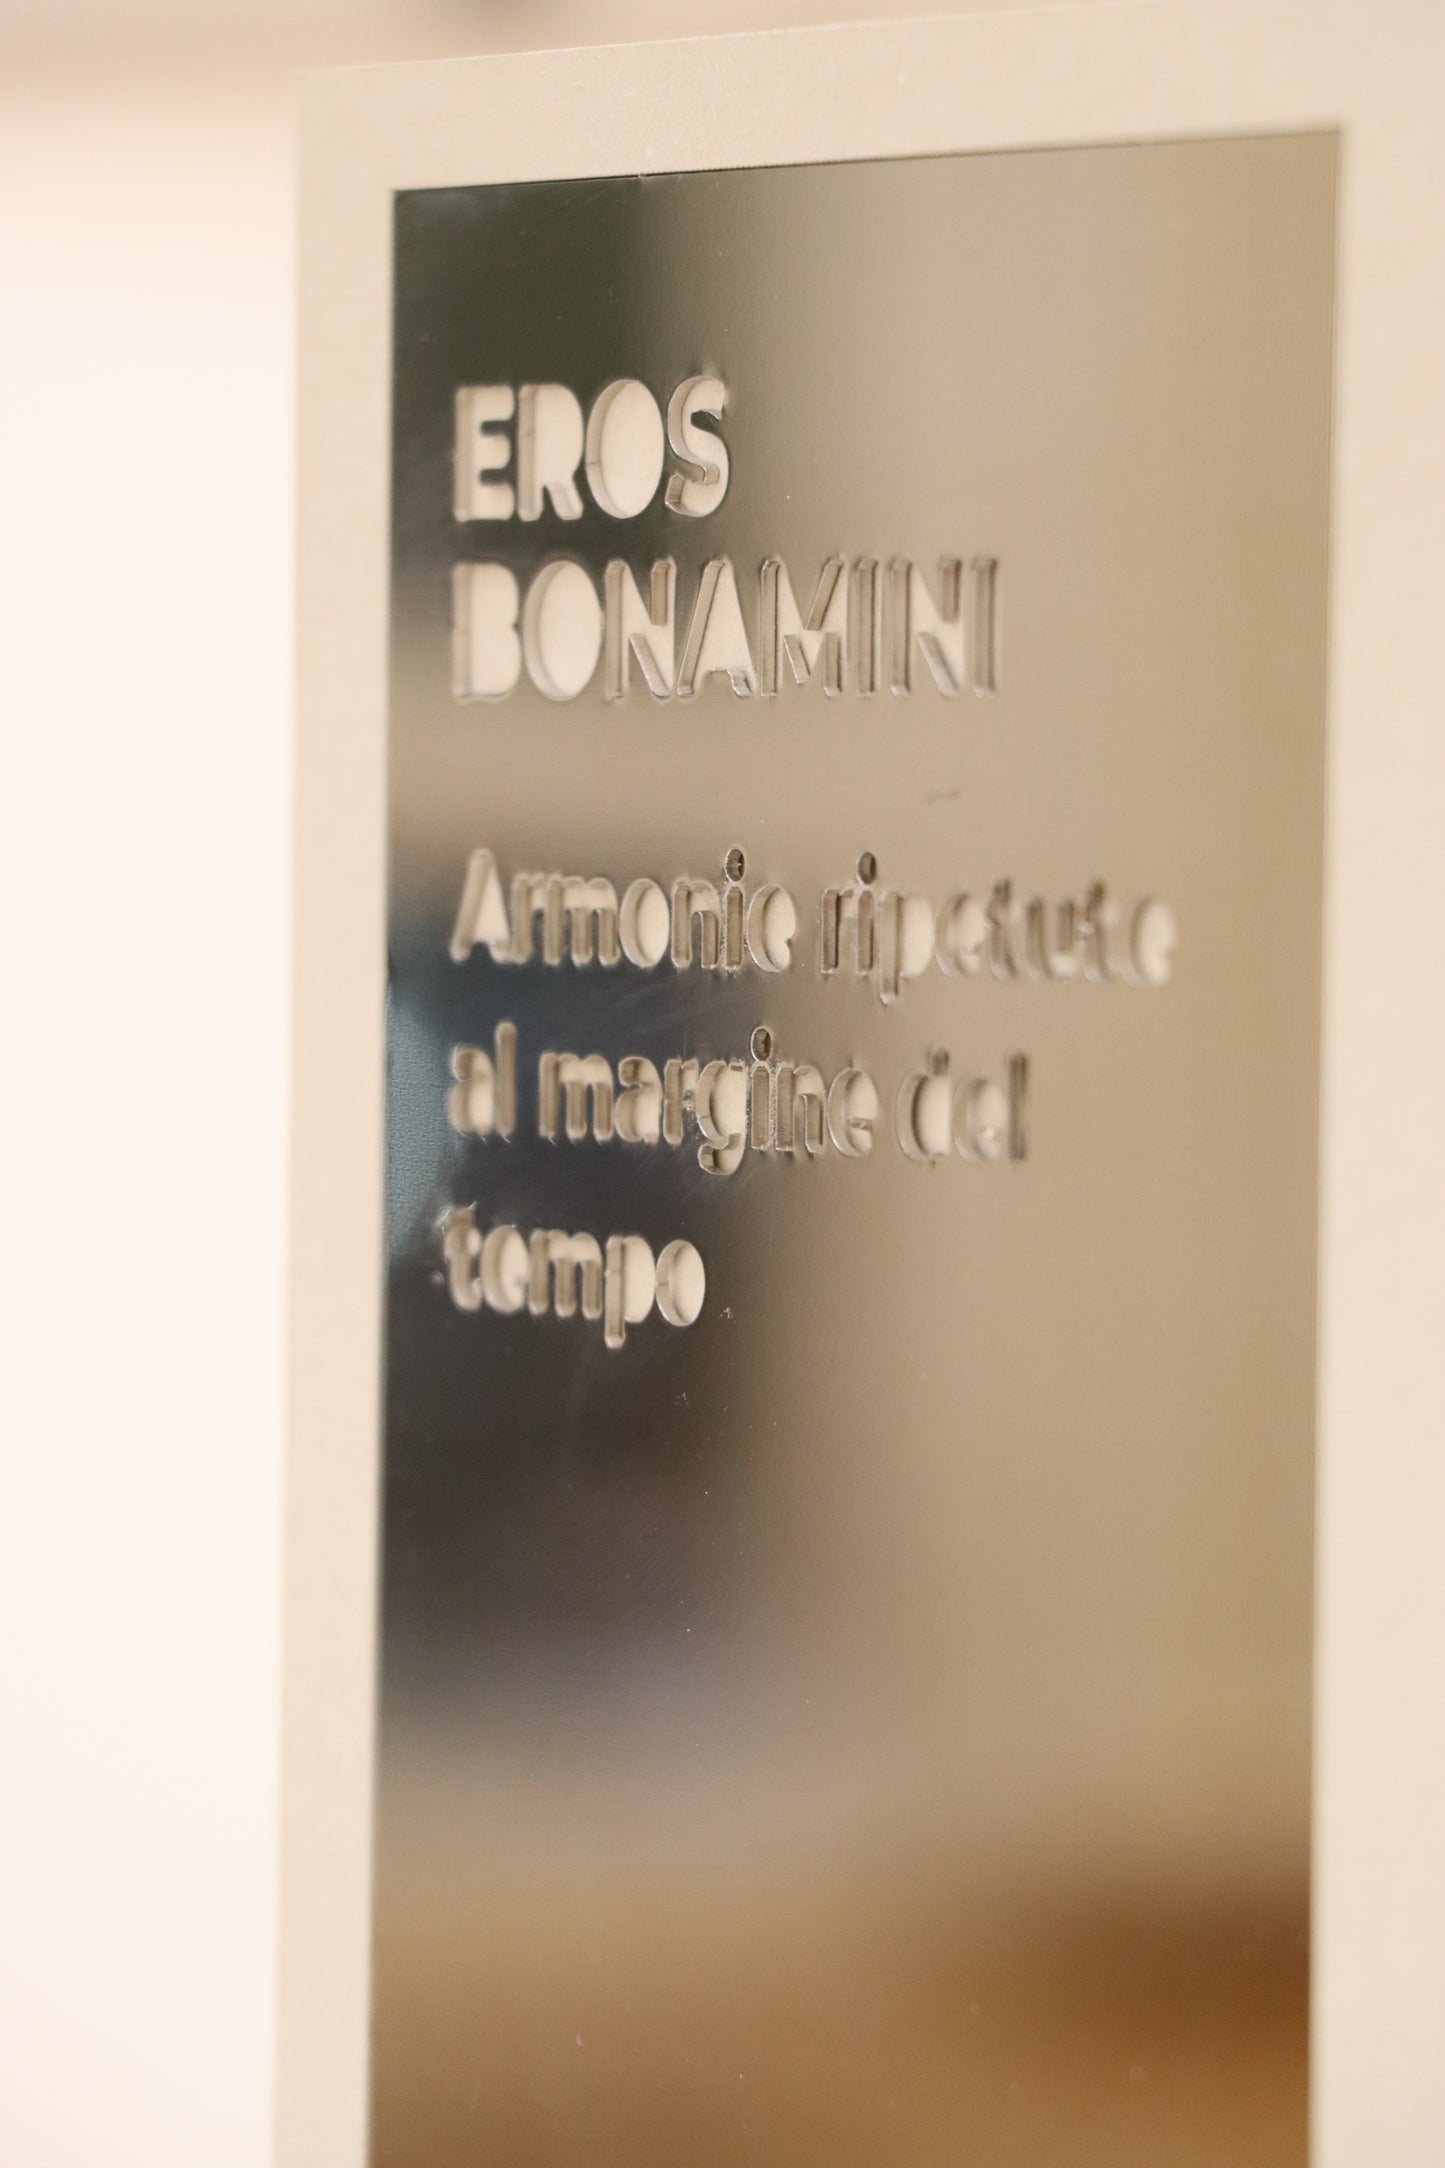 Eros Bonamini Armonie ripetute al margine del tempo